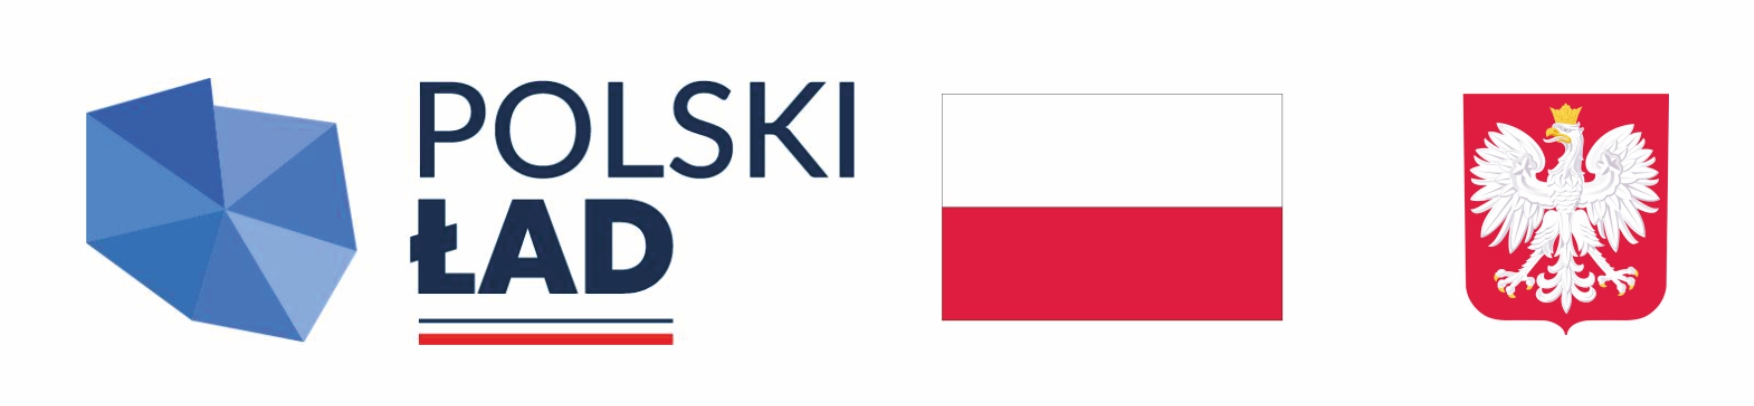 baner polski ład, dofinansowanie rządowe, flaga Polski